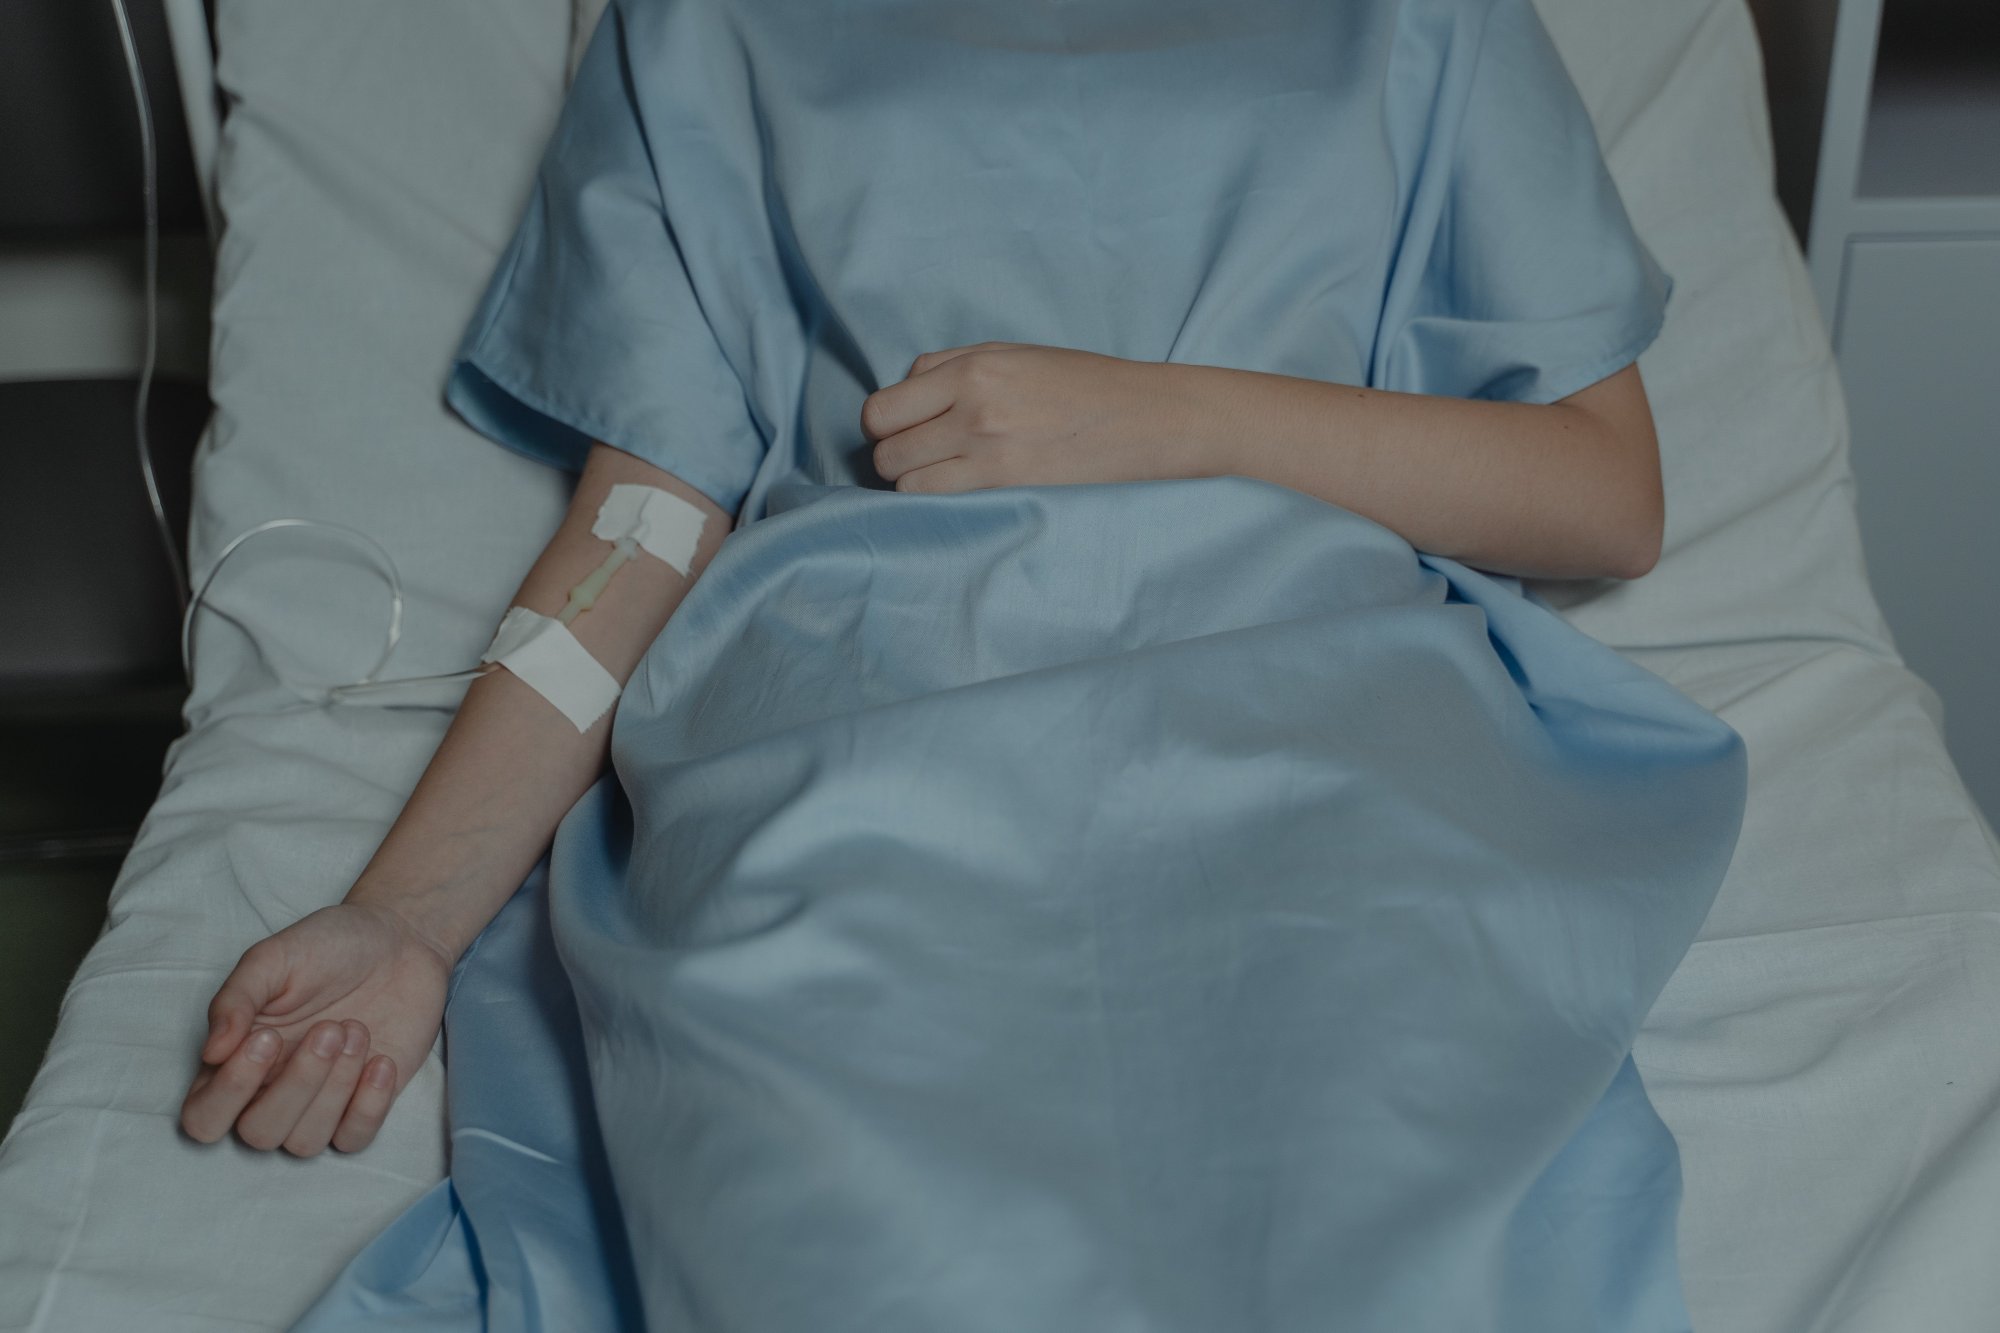 Κρήτη: «Σοβαρές βλάβες στον εγκέφαλό της από την ανοξαιμία» - Αγωνία για τη 17χρονη που υπέστη αλλεργικό σοκ